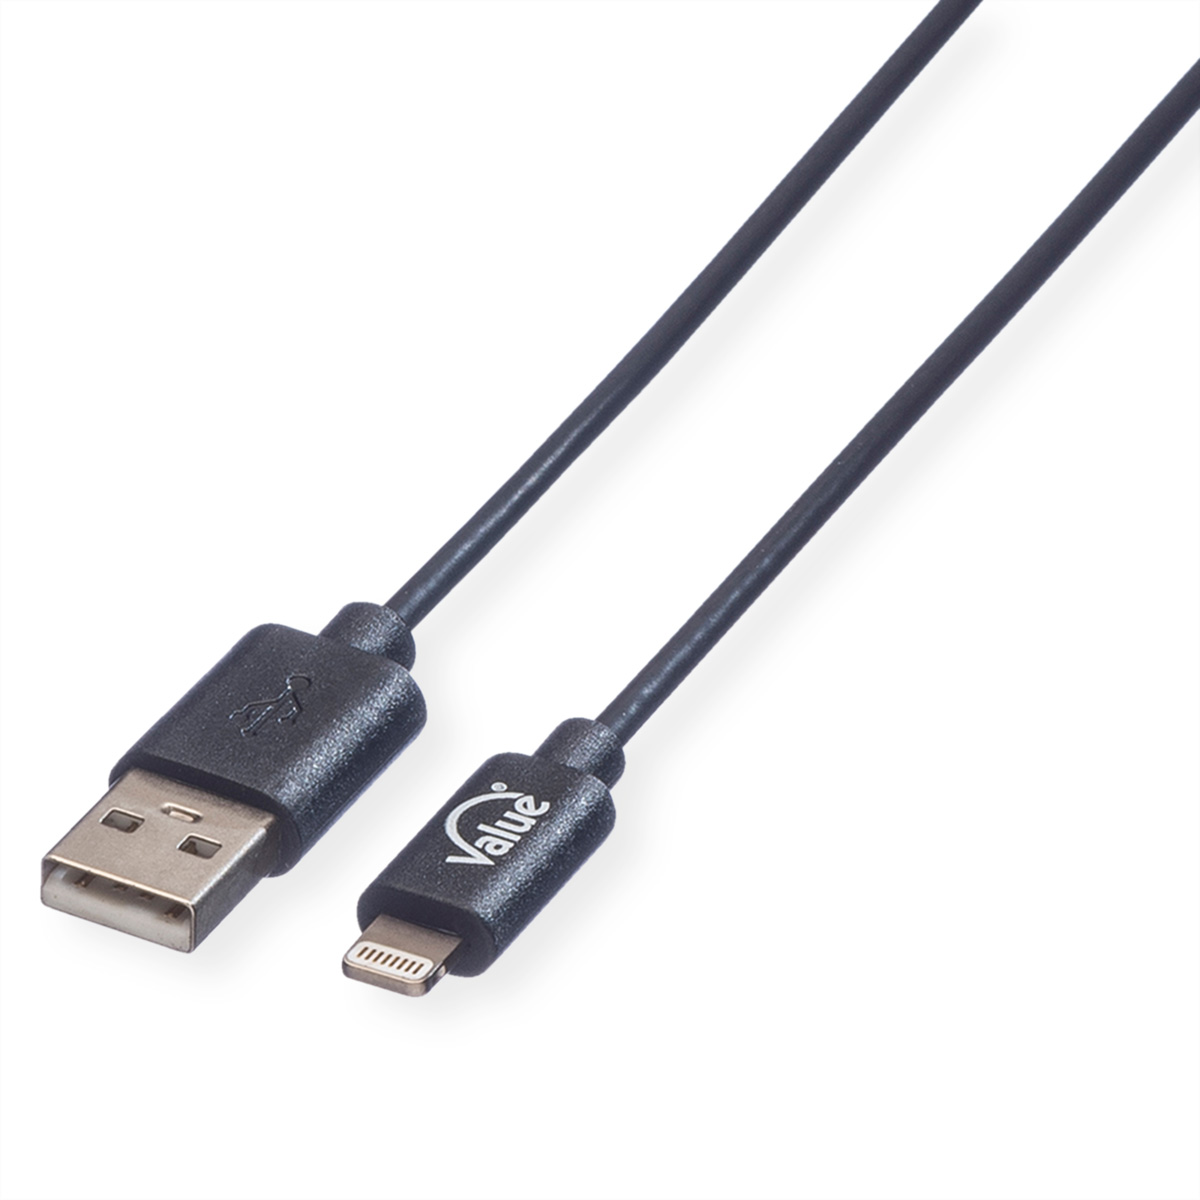 VALUE Connector & 2.0 Lightning Connector Kabel Ladekabel mit Sync- Lightning USB